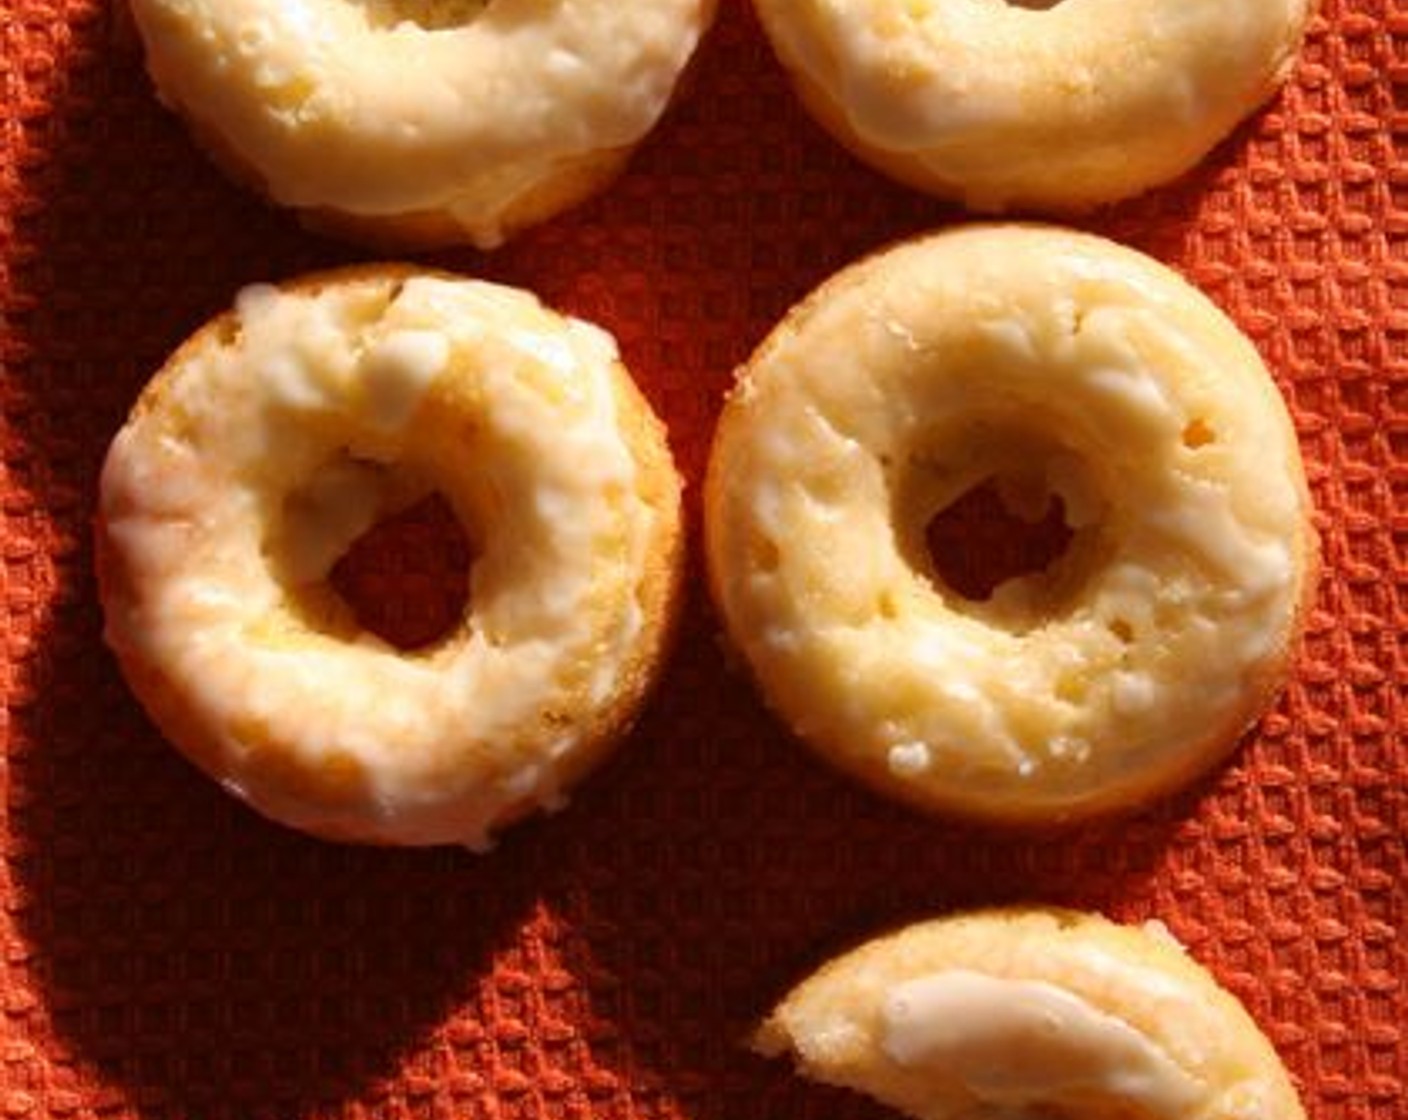 Orange Donuts